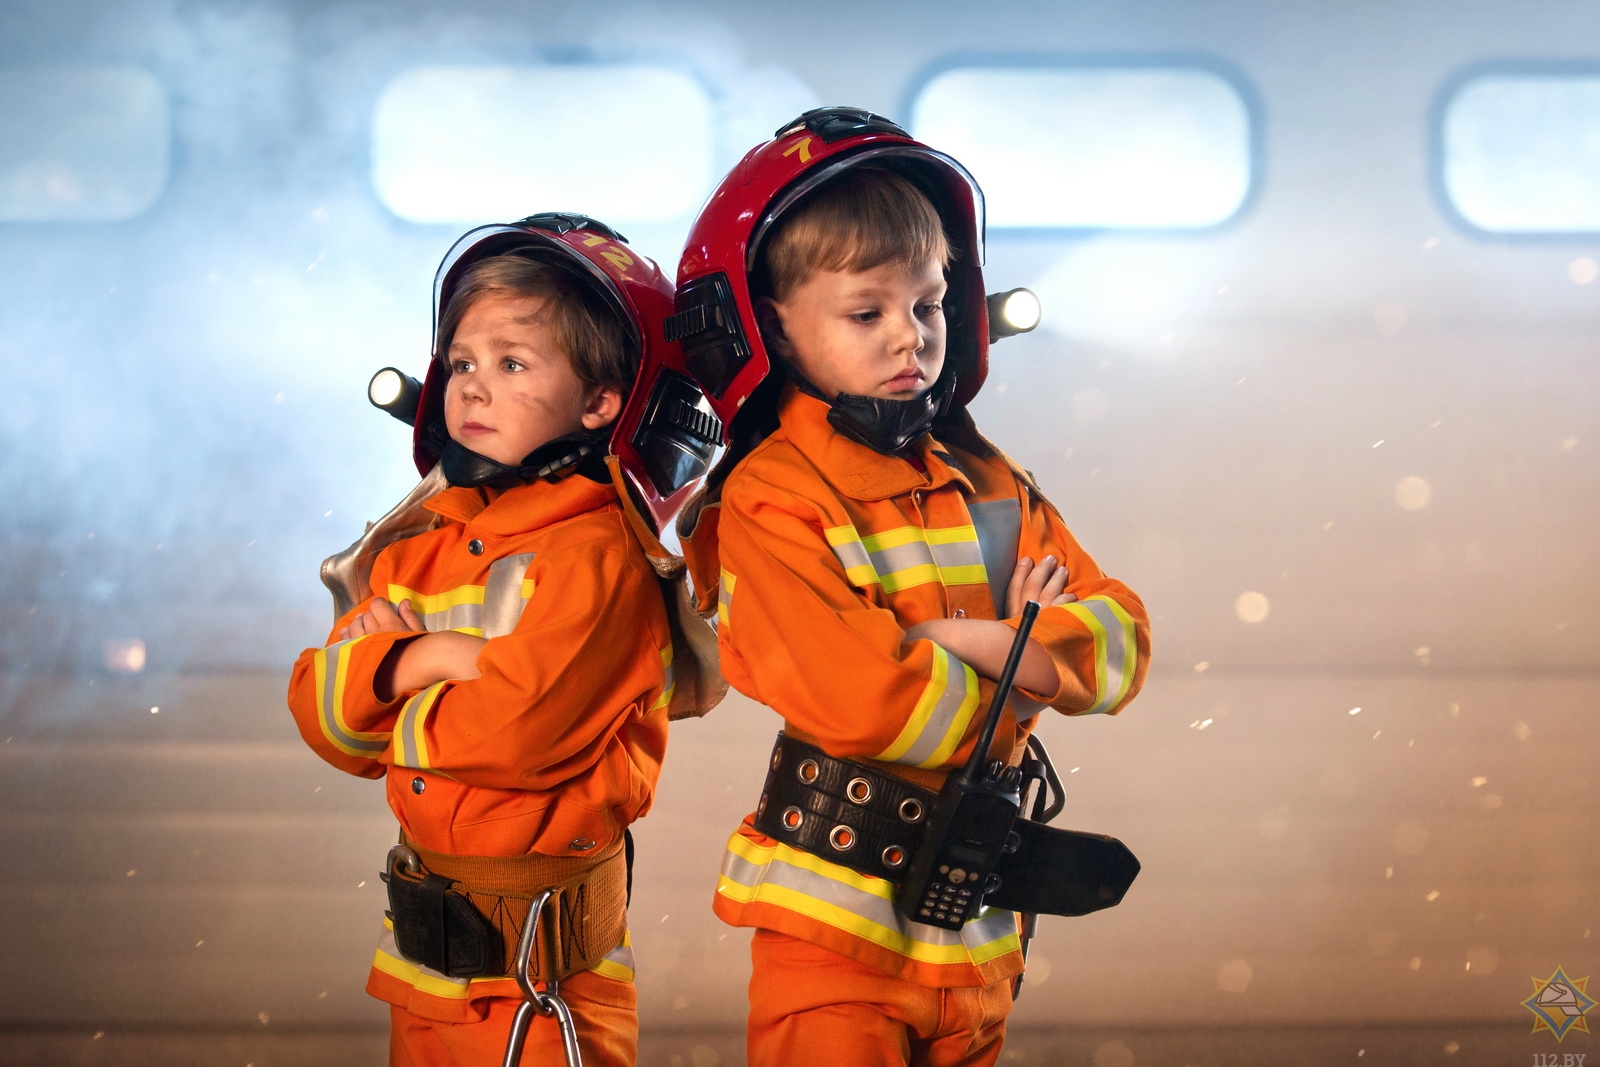 пожарный фото картинки для детей